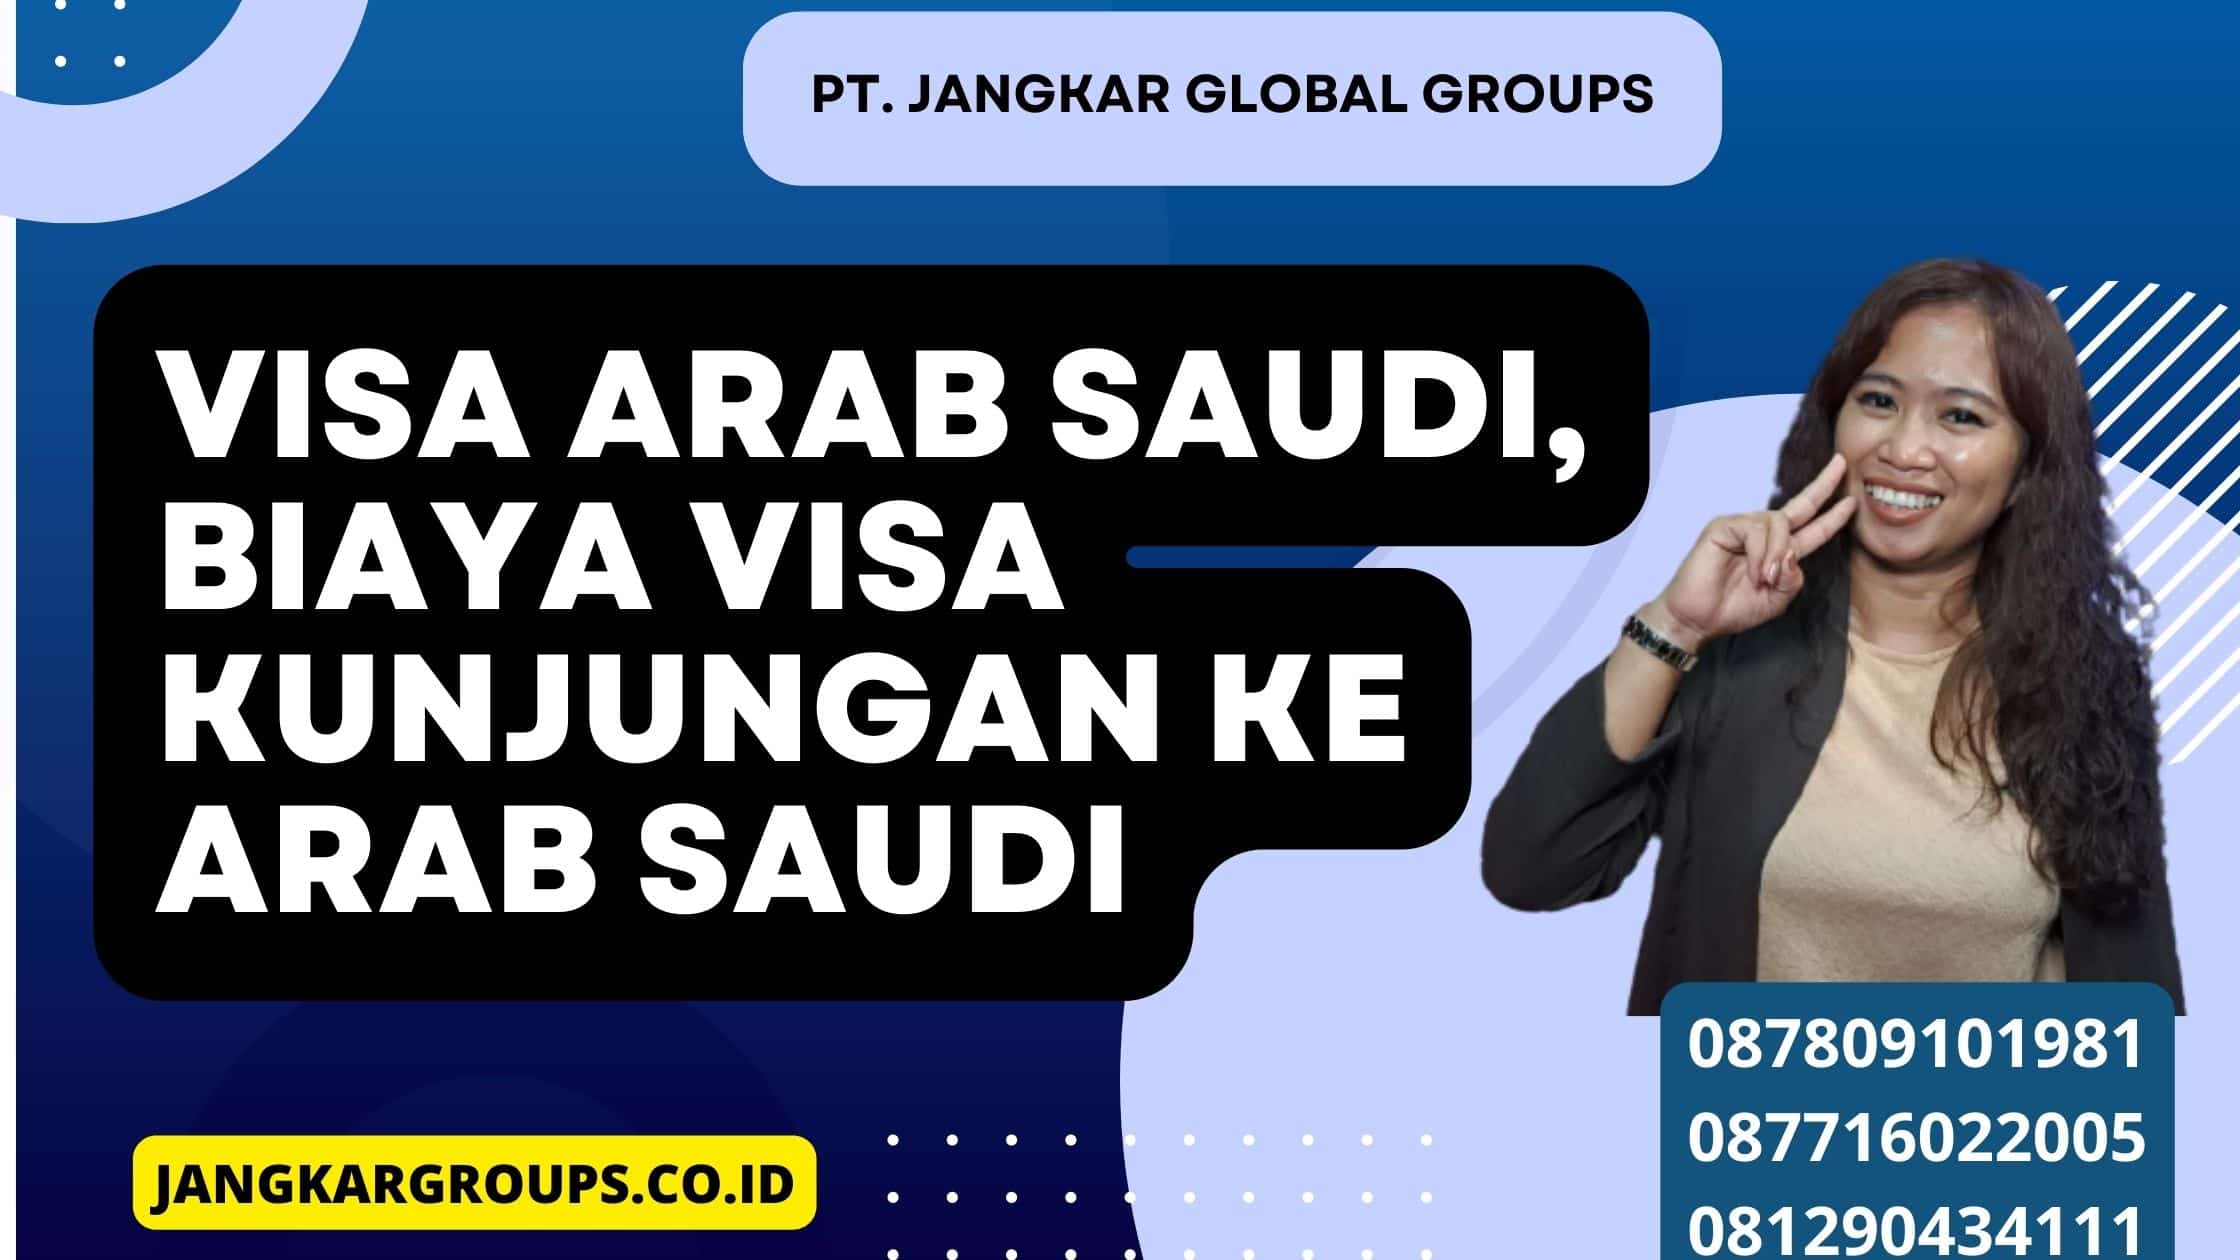 Visa Arab Saudi, Biaya Visa Kunjungan Ke Arab Saudi